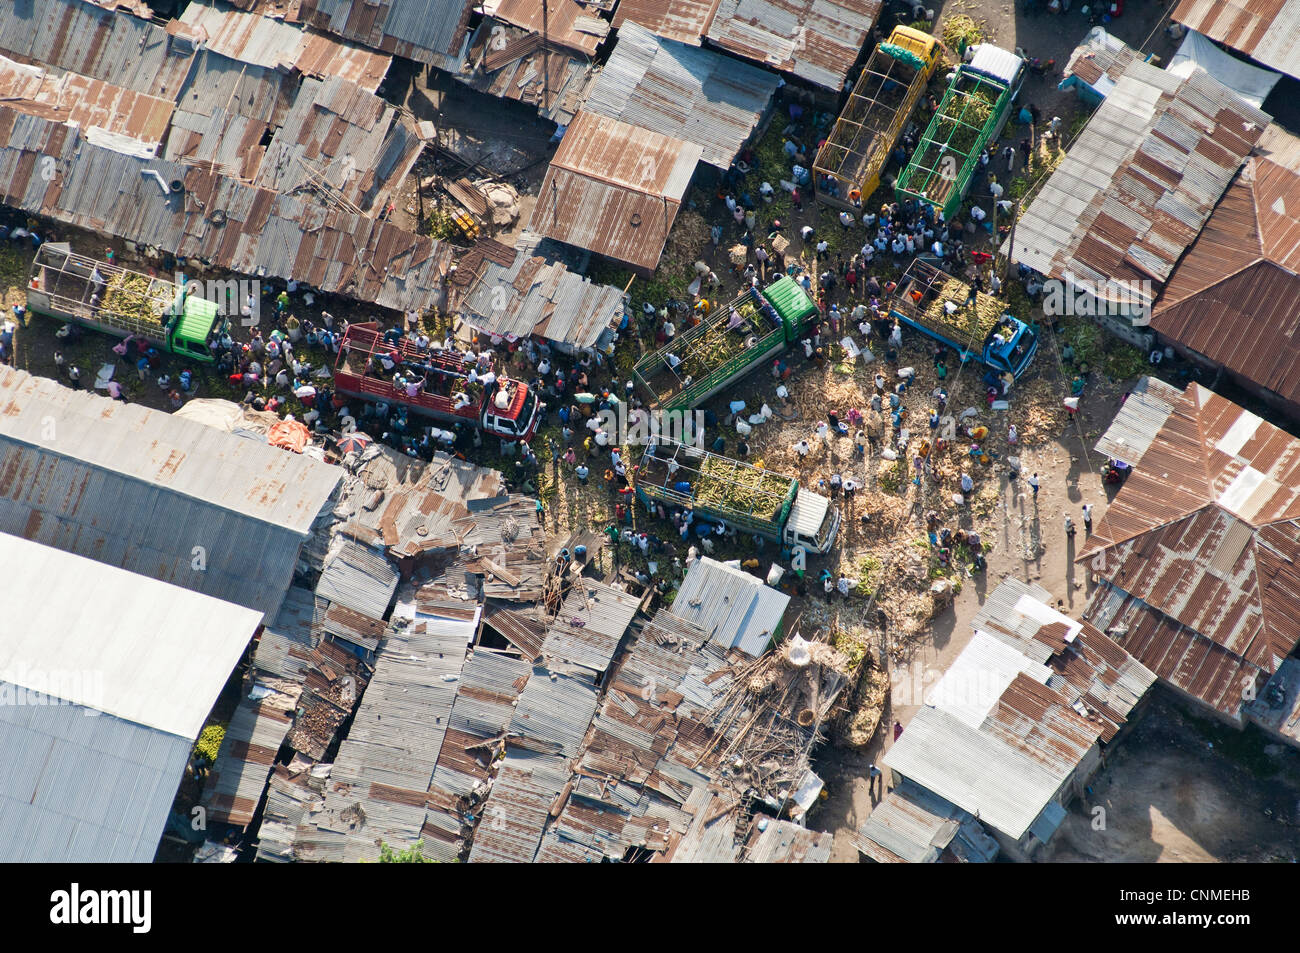 Les camions qui livrent des marchandises à un marché, vue aérienne, Dar es Salaam, Tanzanie Banque D'Images